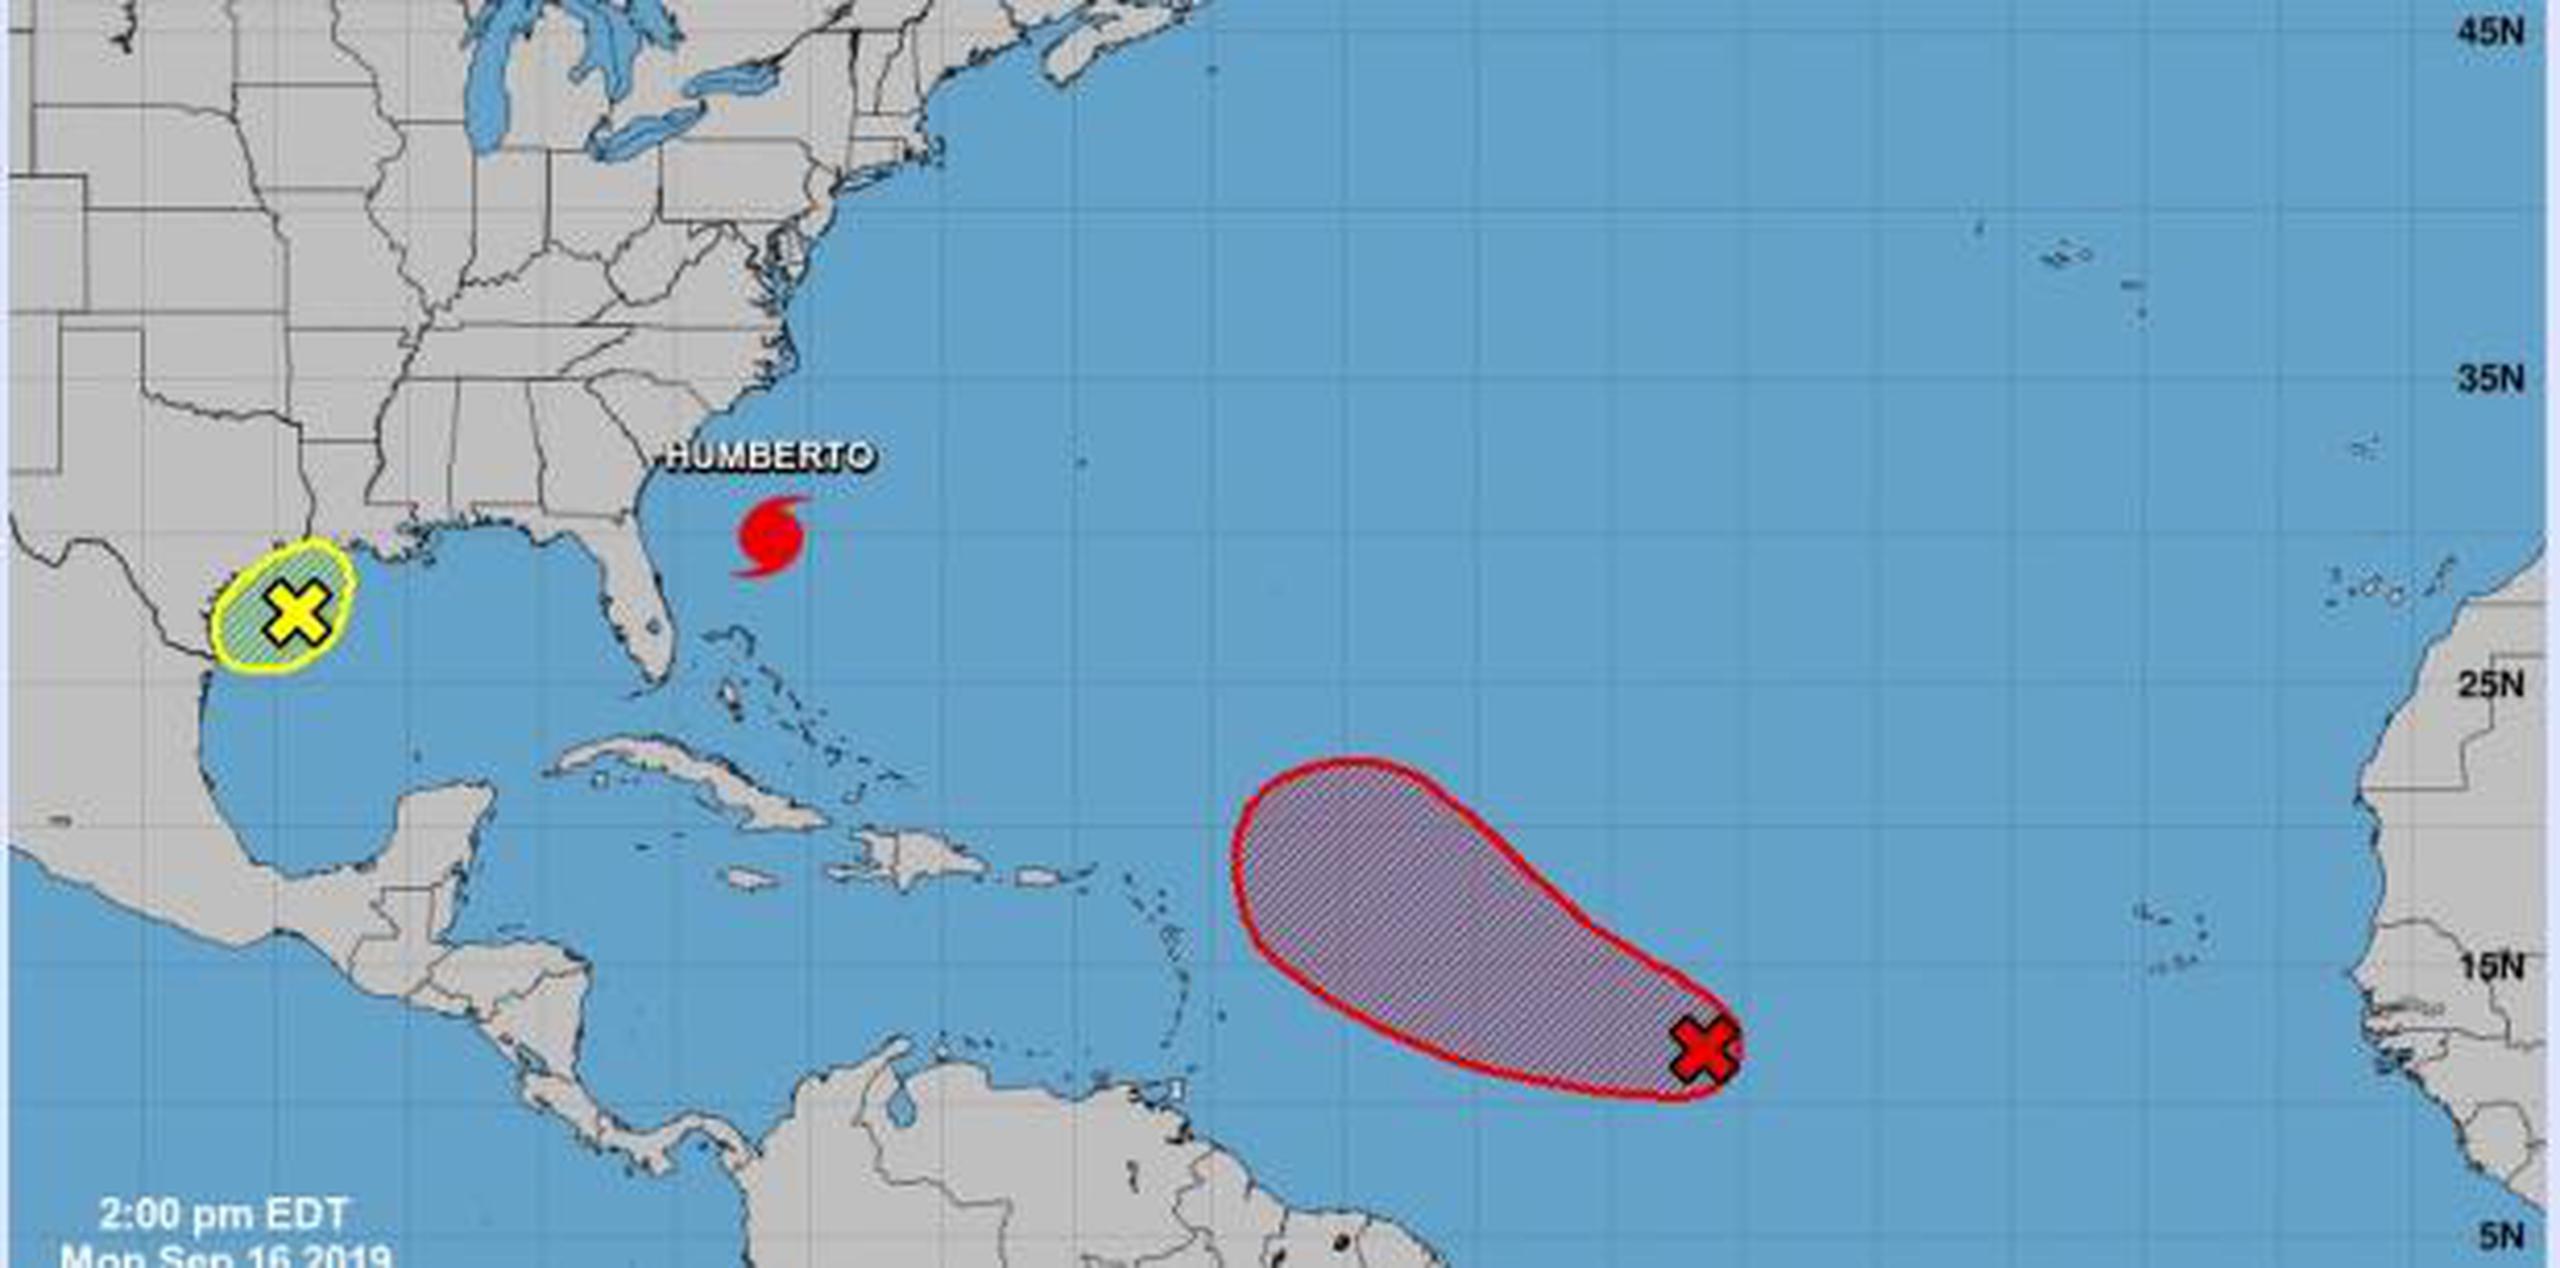 El Centro Nacional de Huracanes emitiendo avisos sobre el huracán
Humberto, ubicado a menos de 700 millas al oeste-suroeste de las Bermudas. (NOAA)